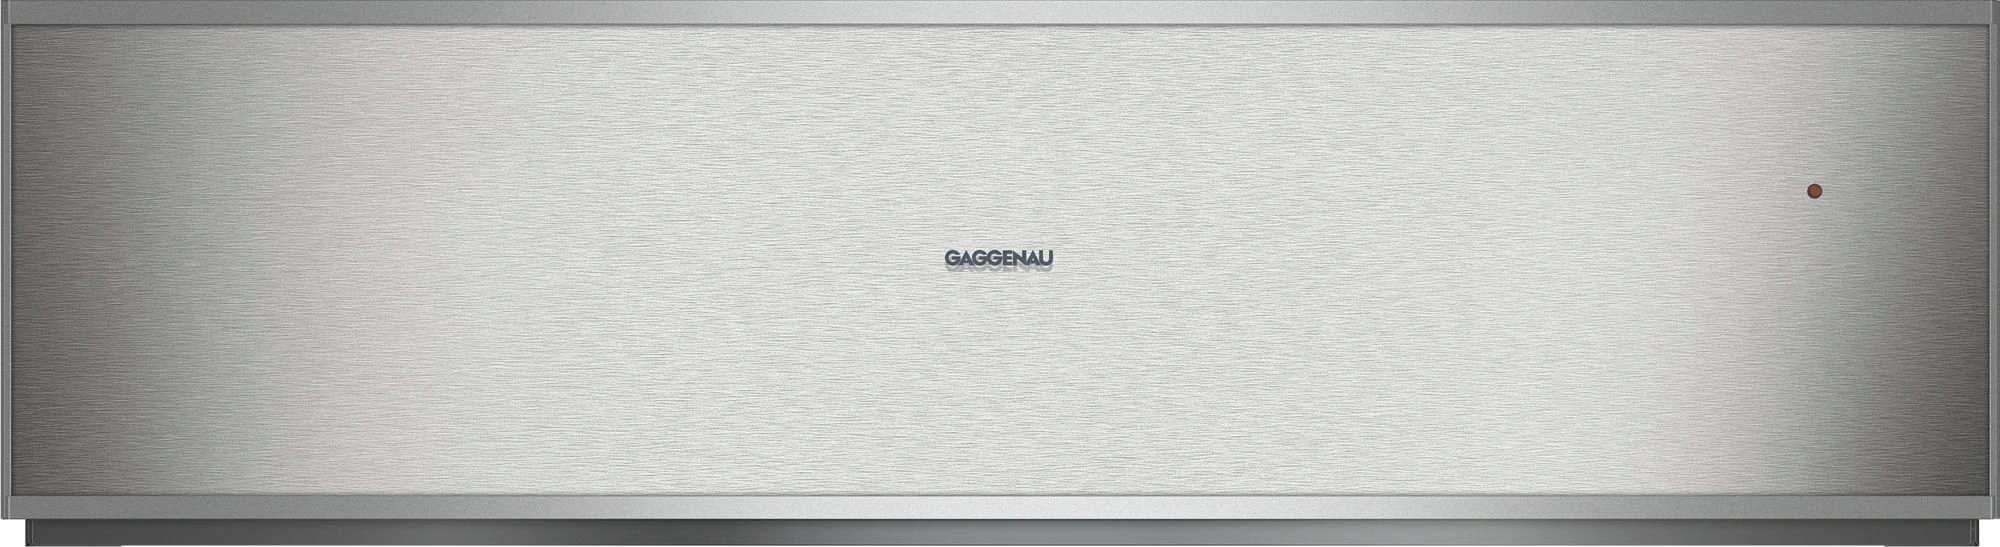 Gaggenau WS482110 Einbau-Wärmeschublade Edelstahl